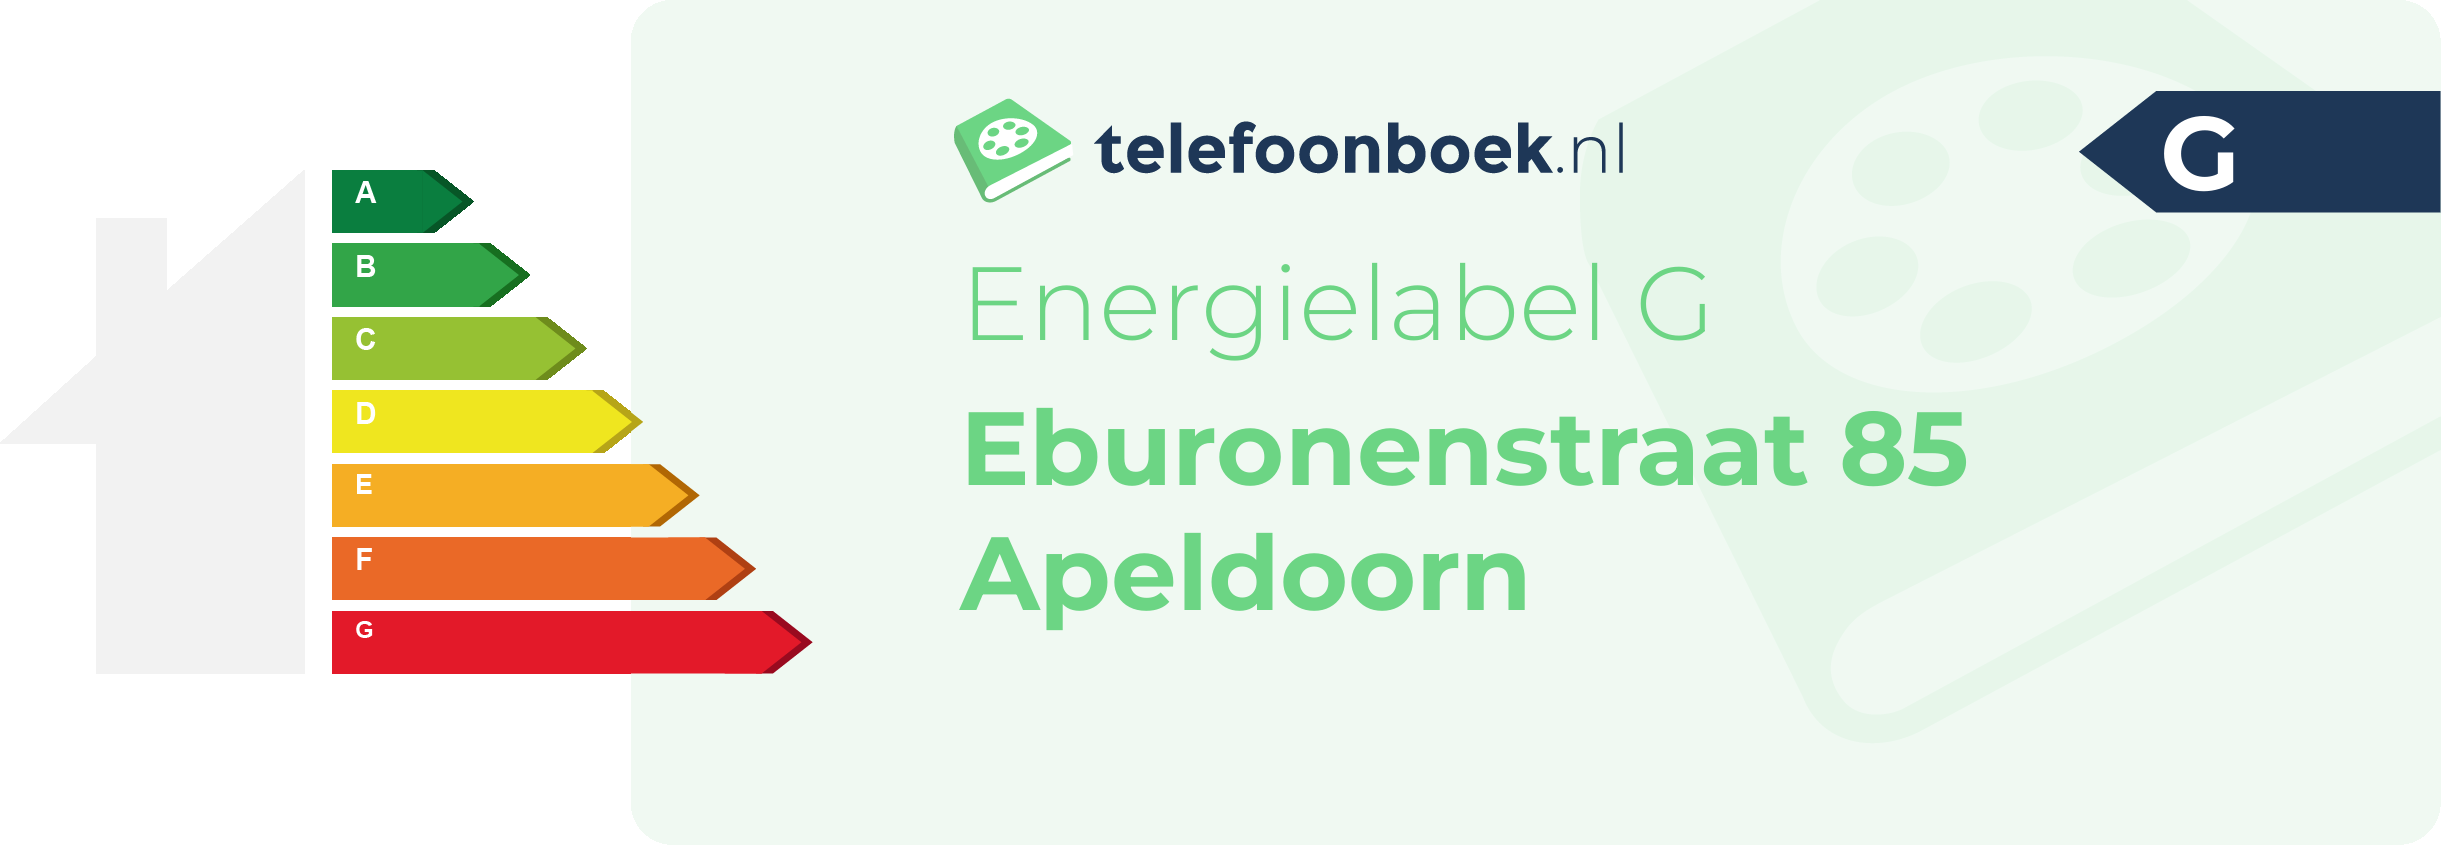 Energielabel Eburonenstraat 85 Apeldoorn